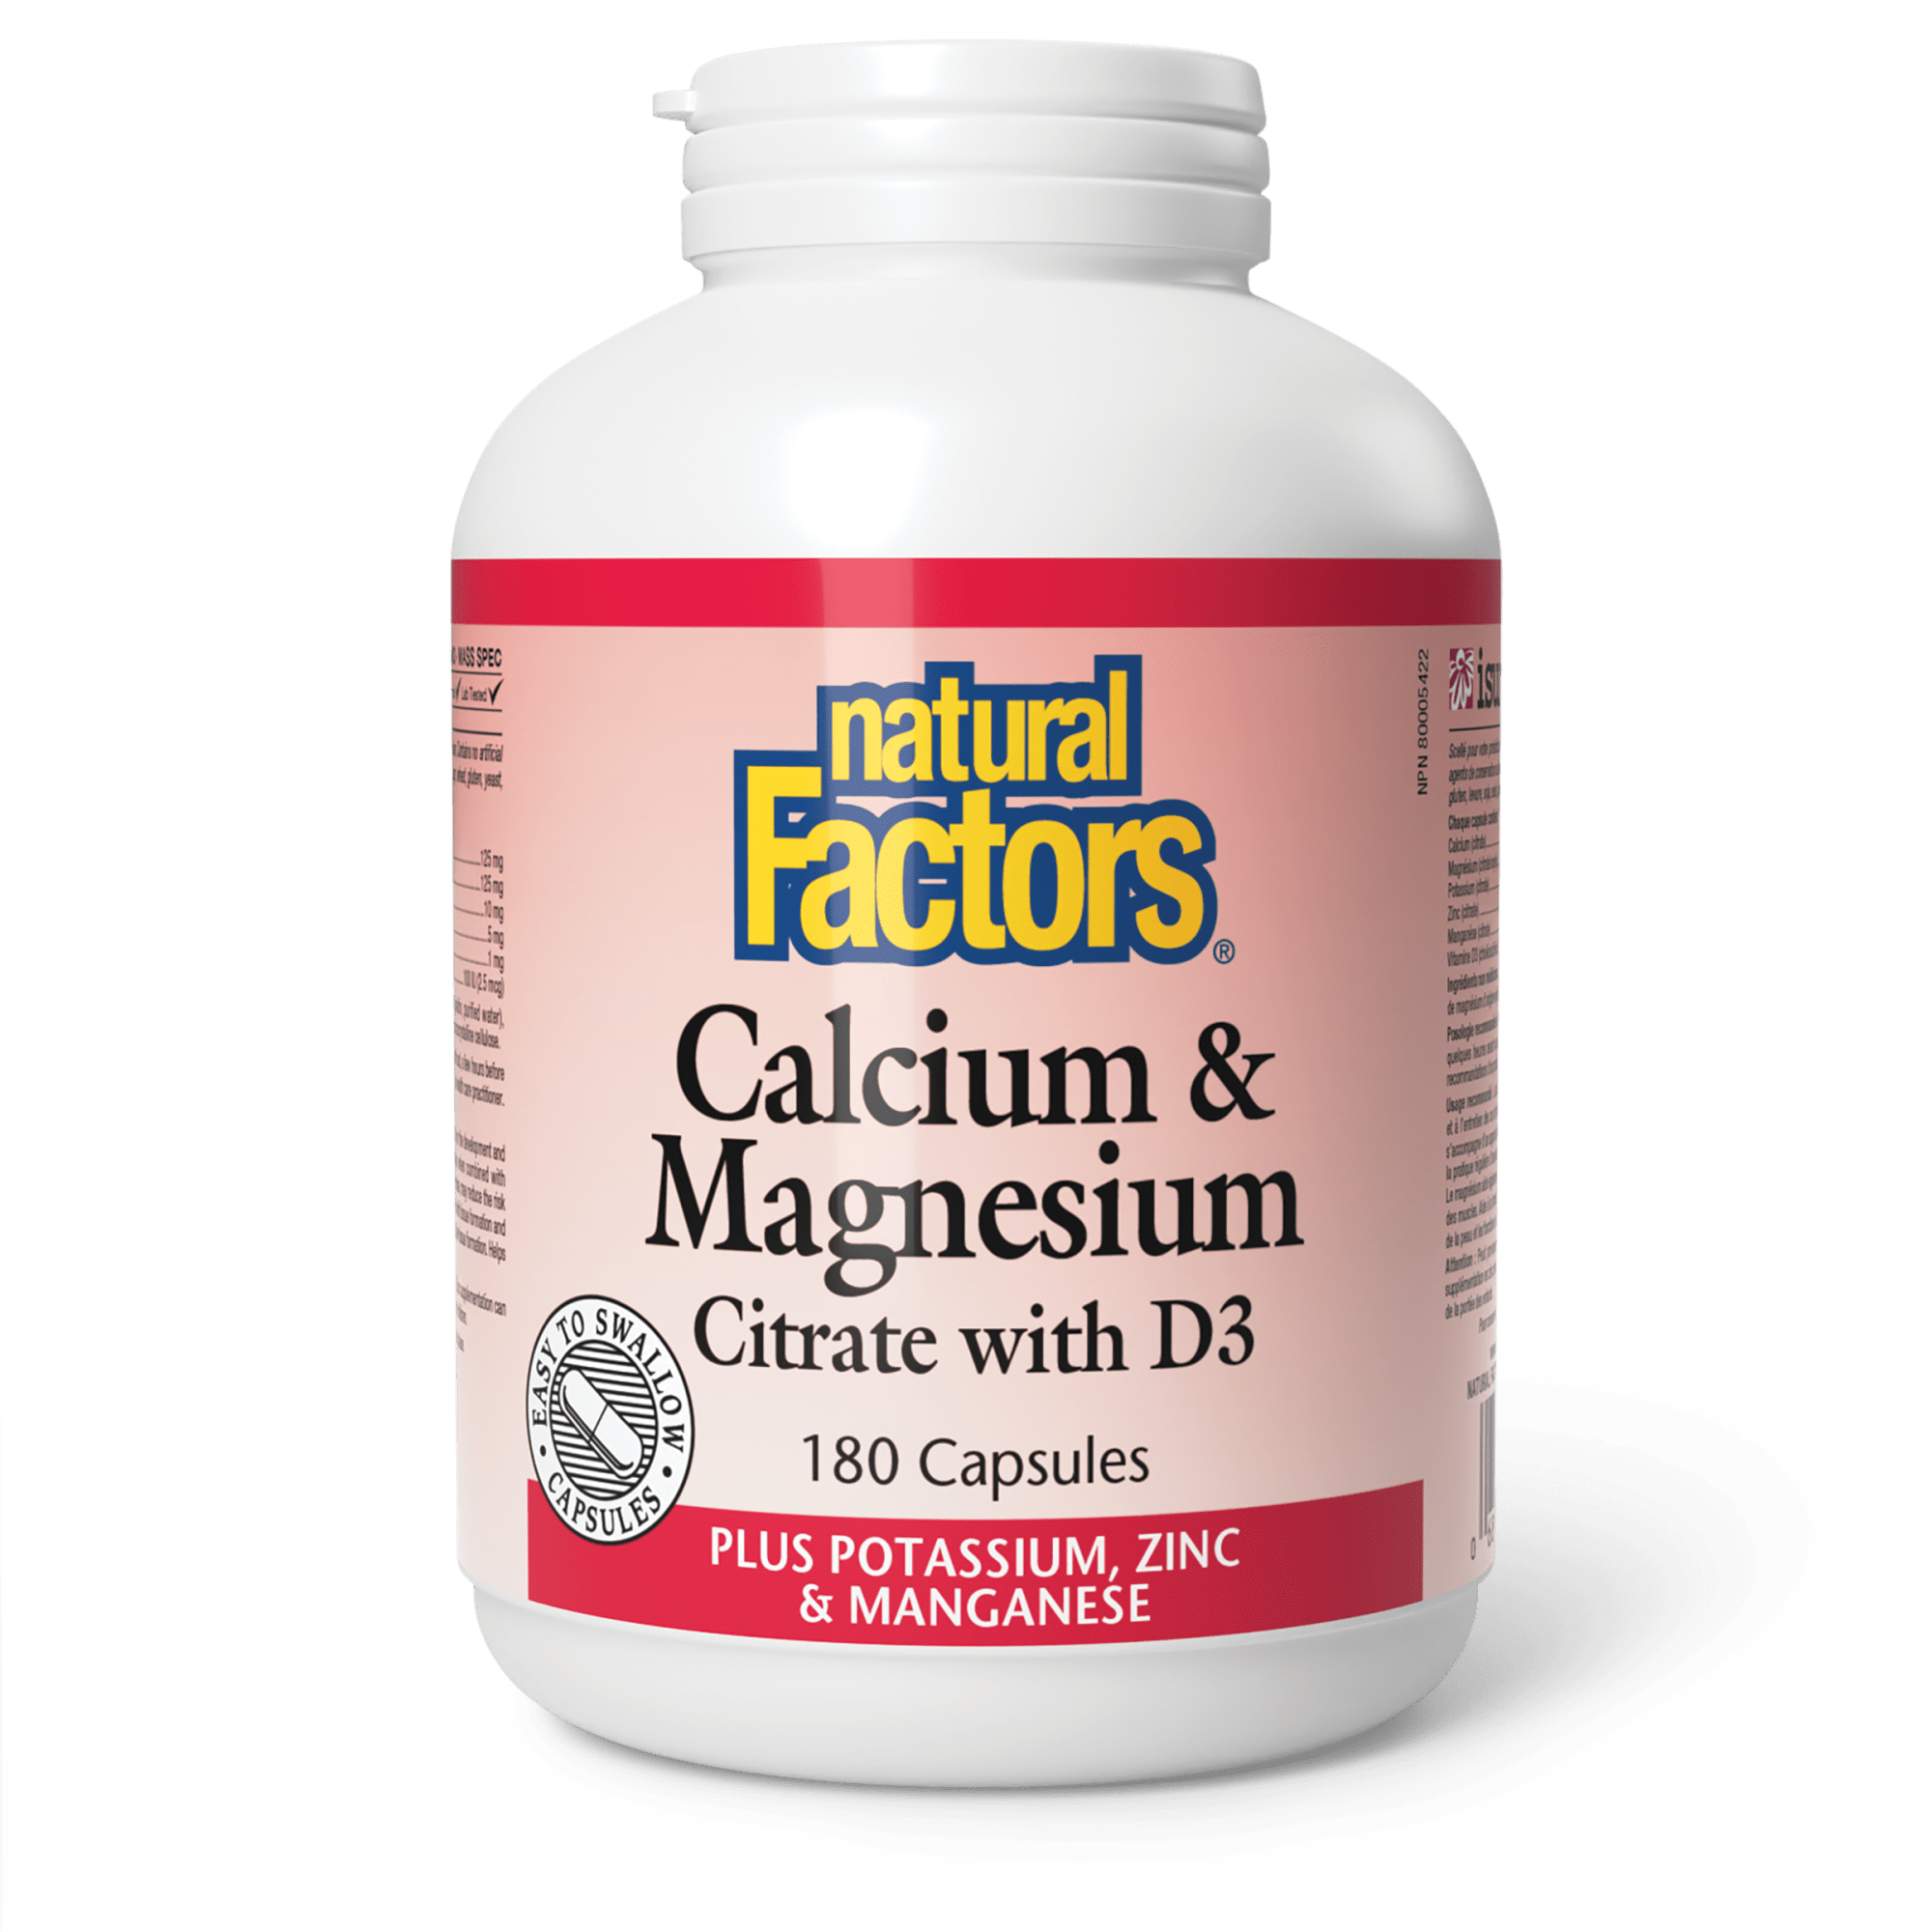 Natural Factors Calcium & Magnesium Citrate with D3 180 Capsules